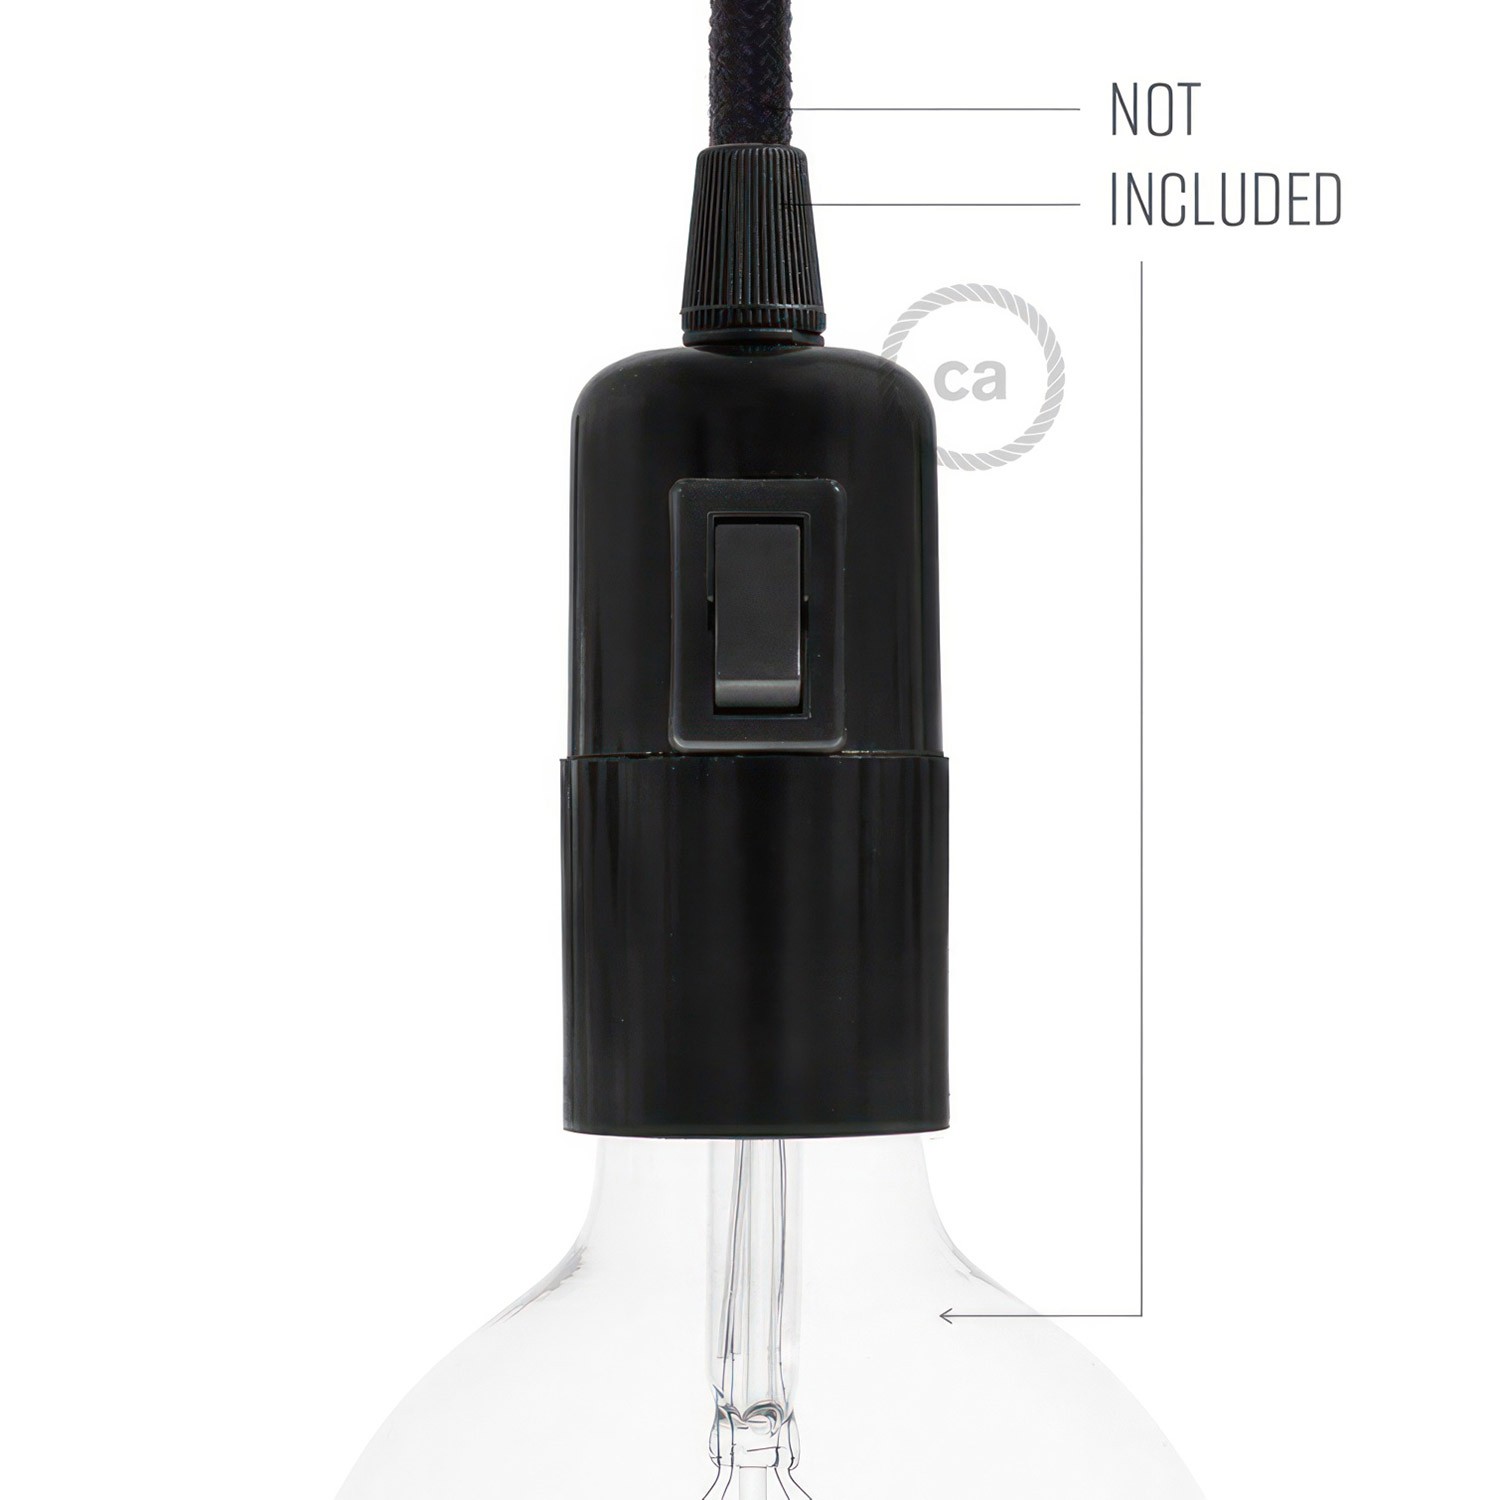 Bakelite E27 lamp holder kit with switch